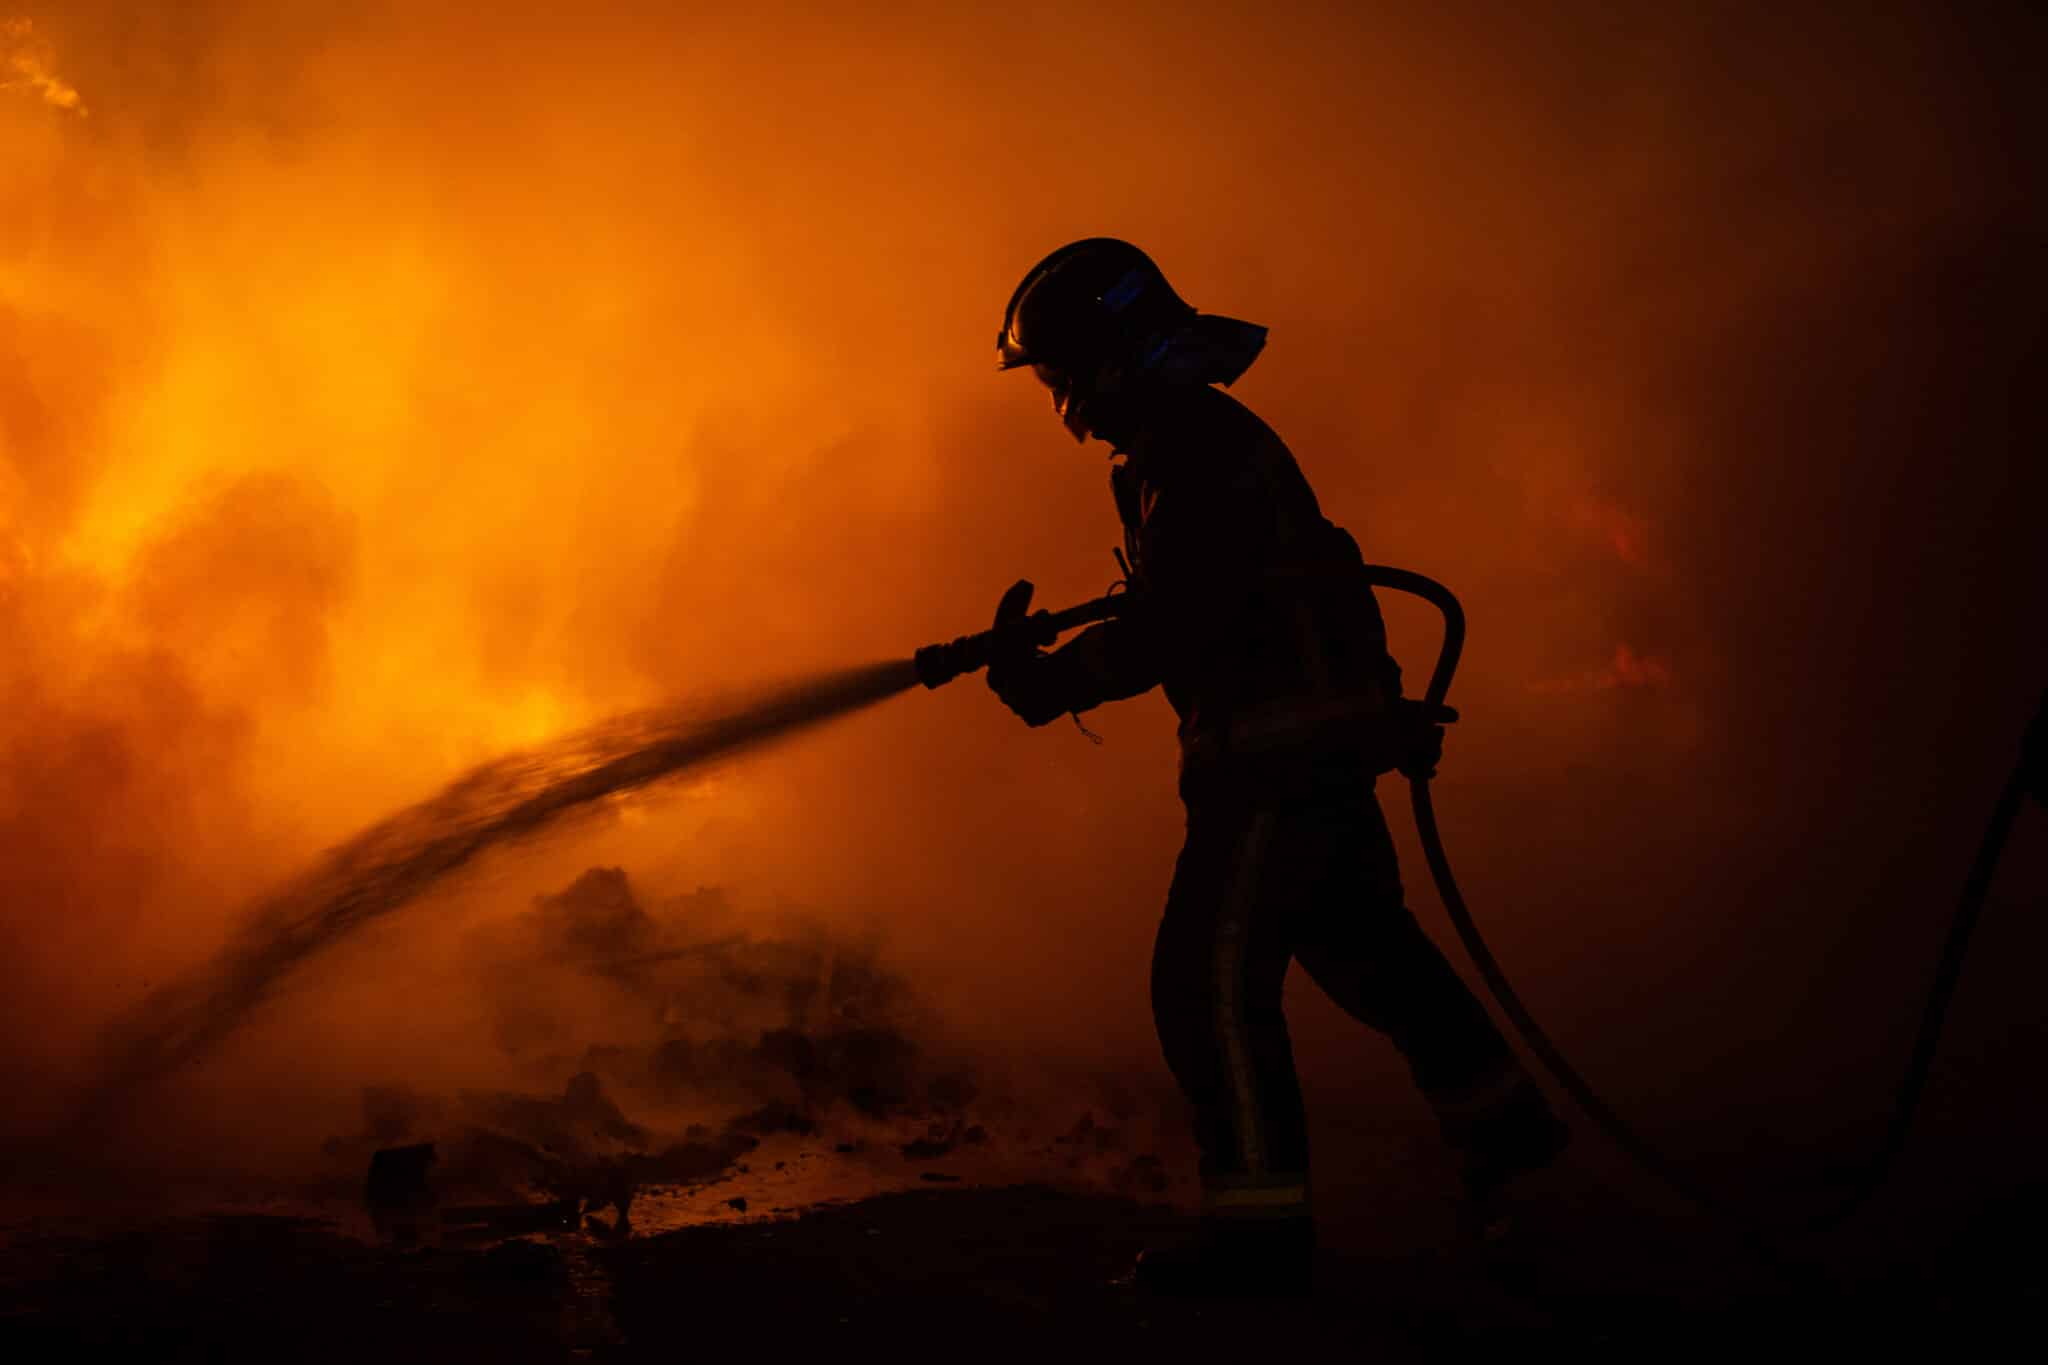 Un bombero trabaja para apagar los fuegos en Barcelona